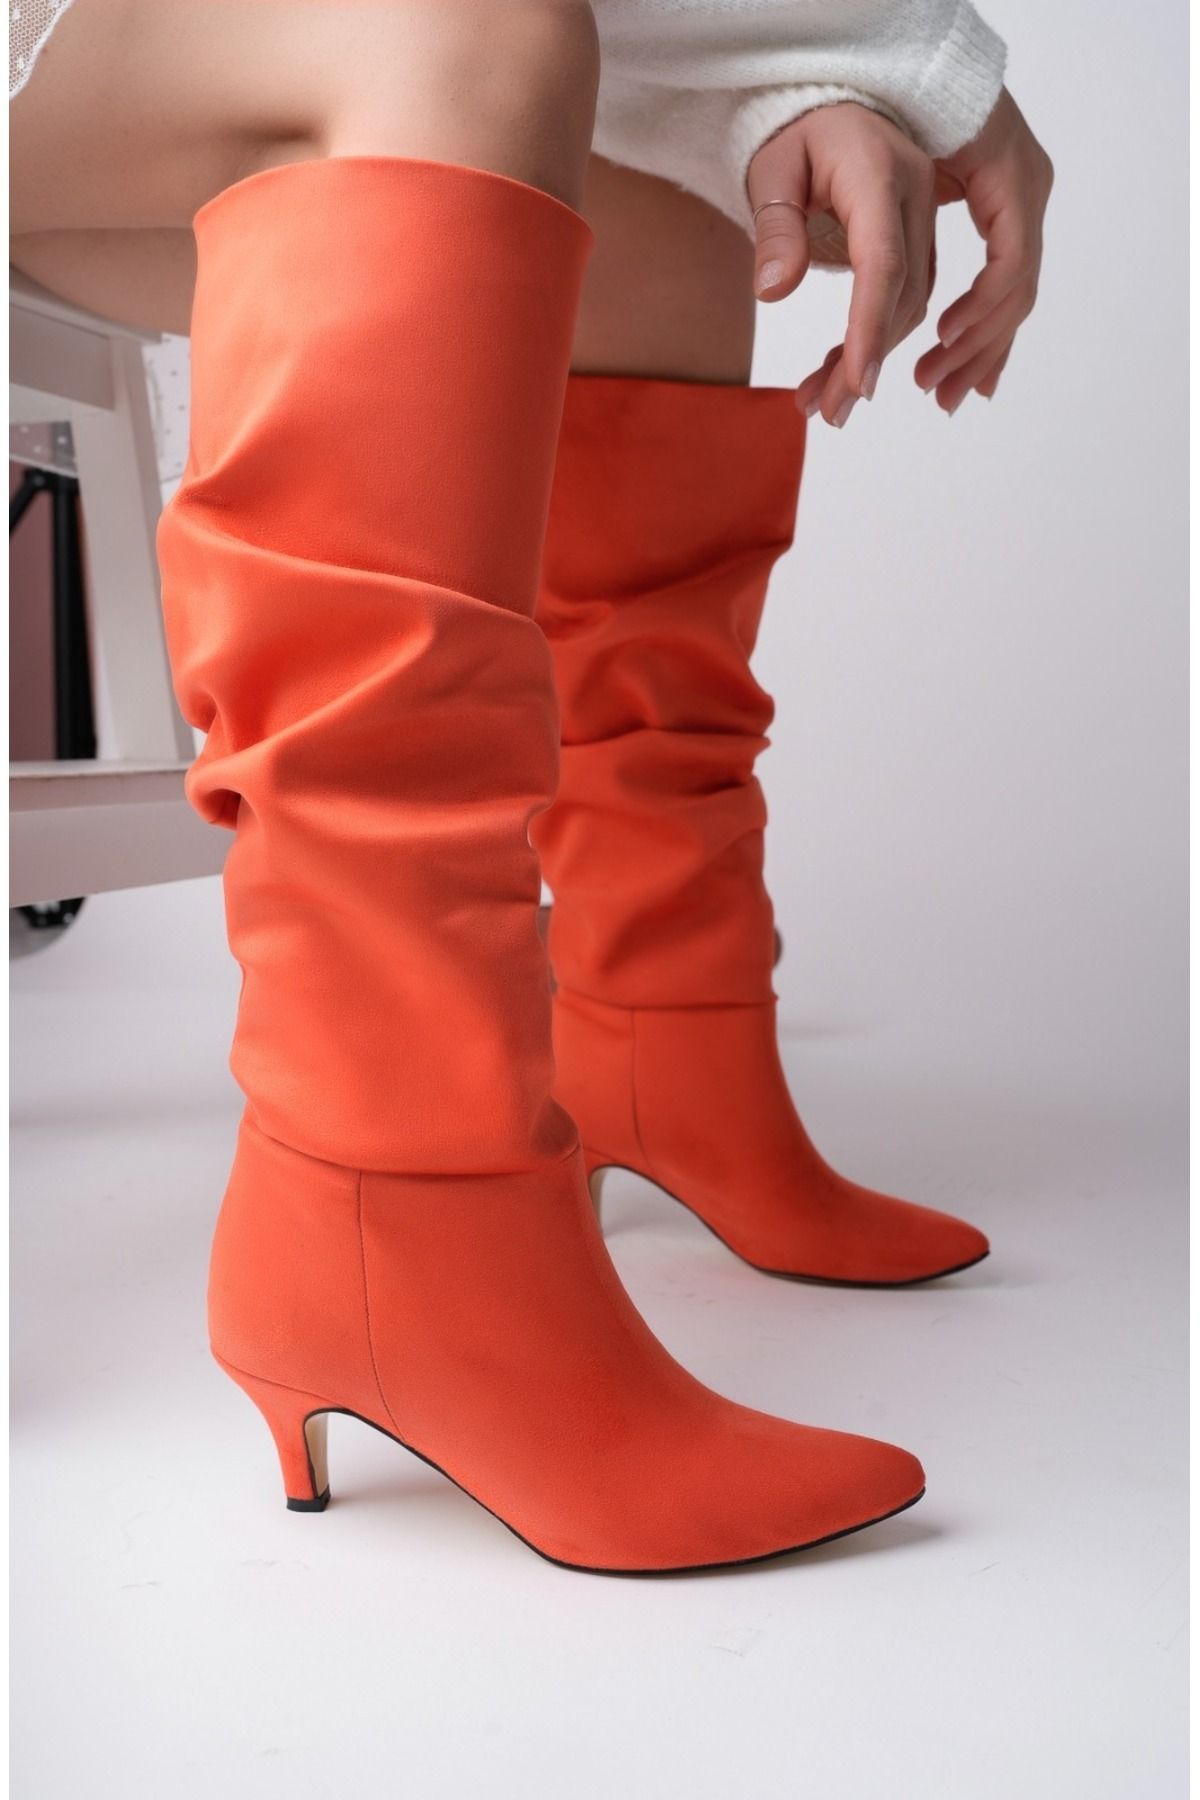 Derin Shoes Nar Çiçeği 6cm Topuk Boyu Ökçe Ayna Detaylı Körüklü Kadın Çizme